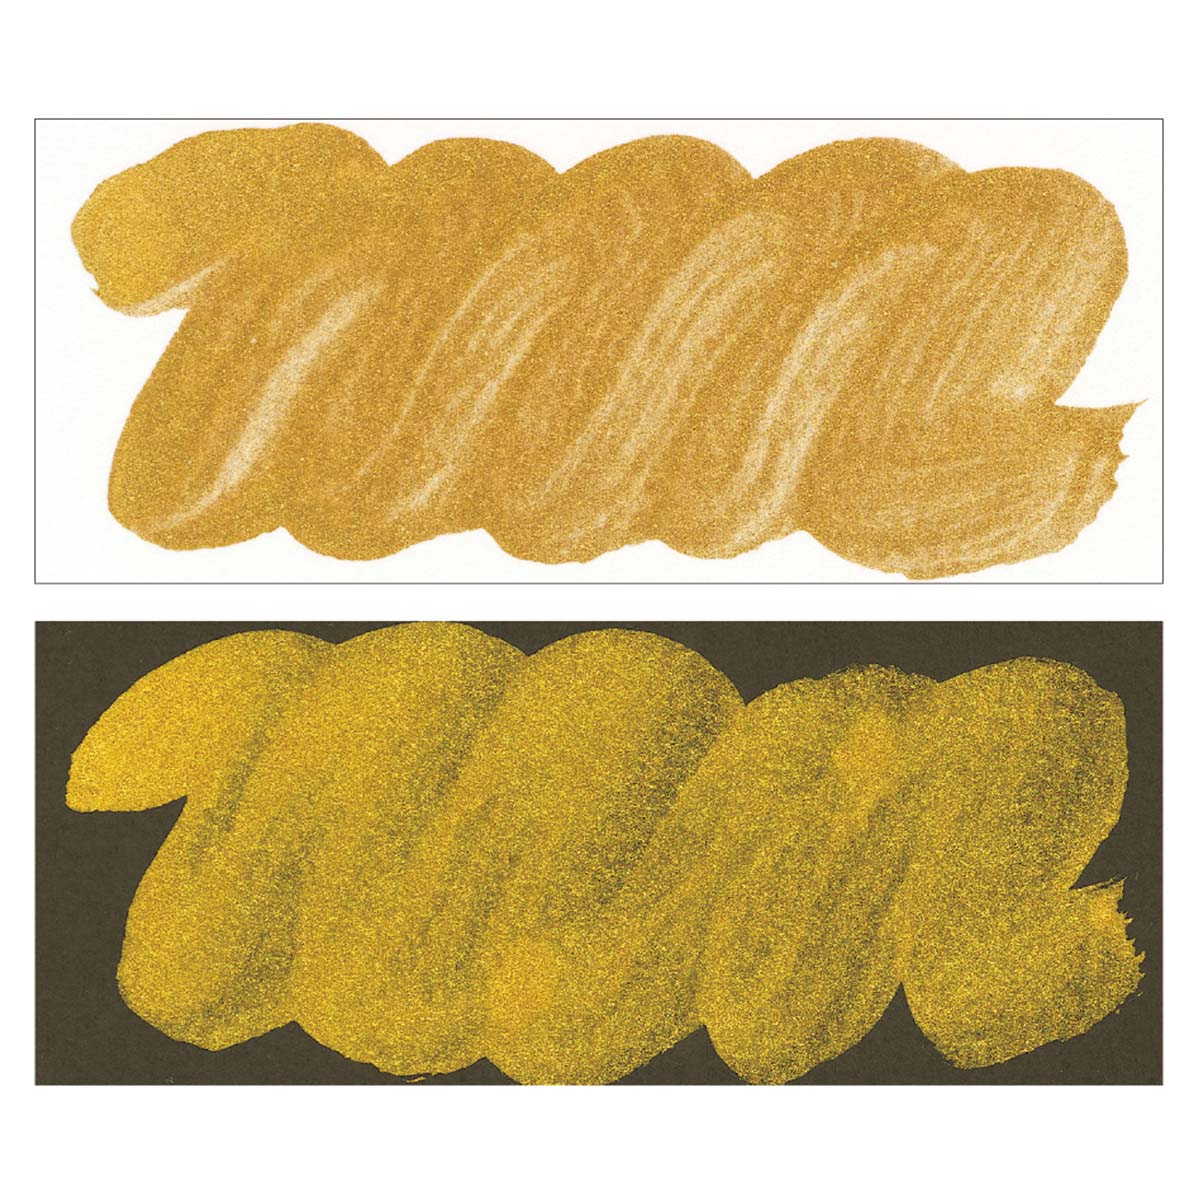 Guld Mica Ink 60 ml i gruppen Konstnärsmaterial / Färger / Tusch och bläck hos Pen Store (126928)